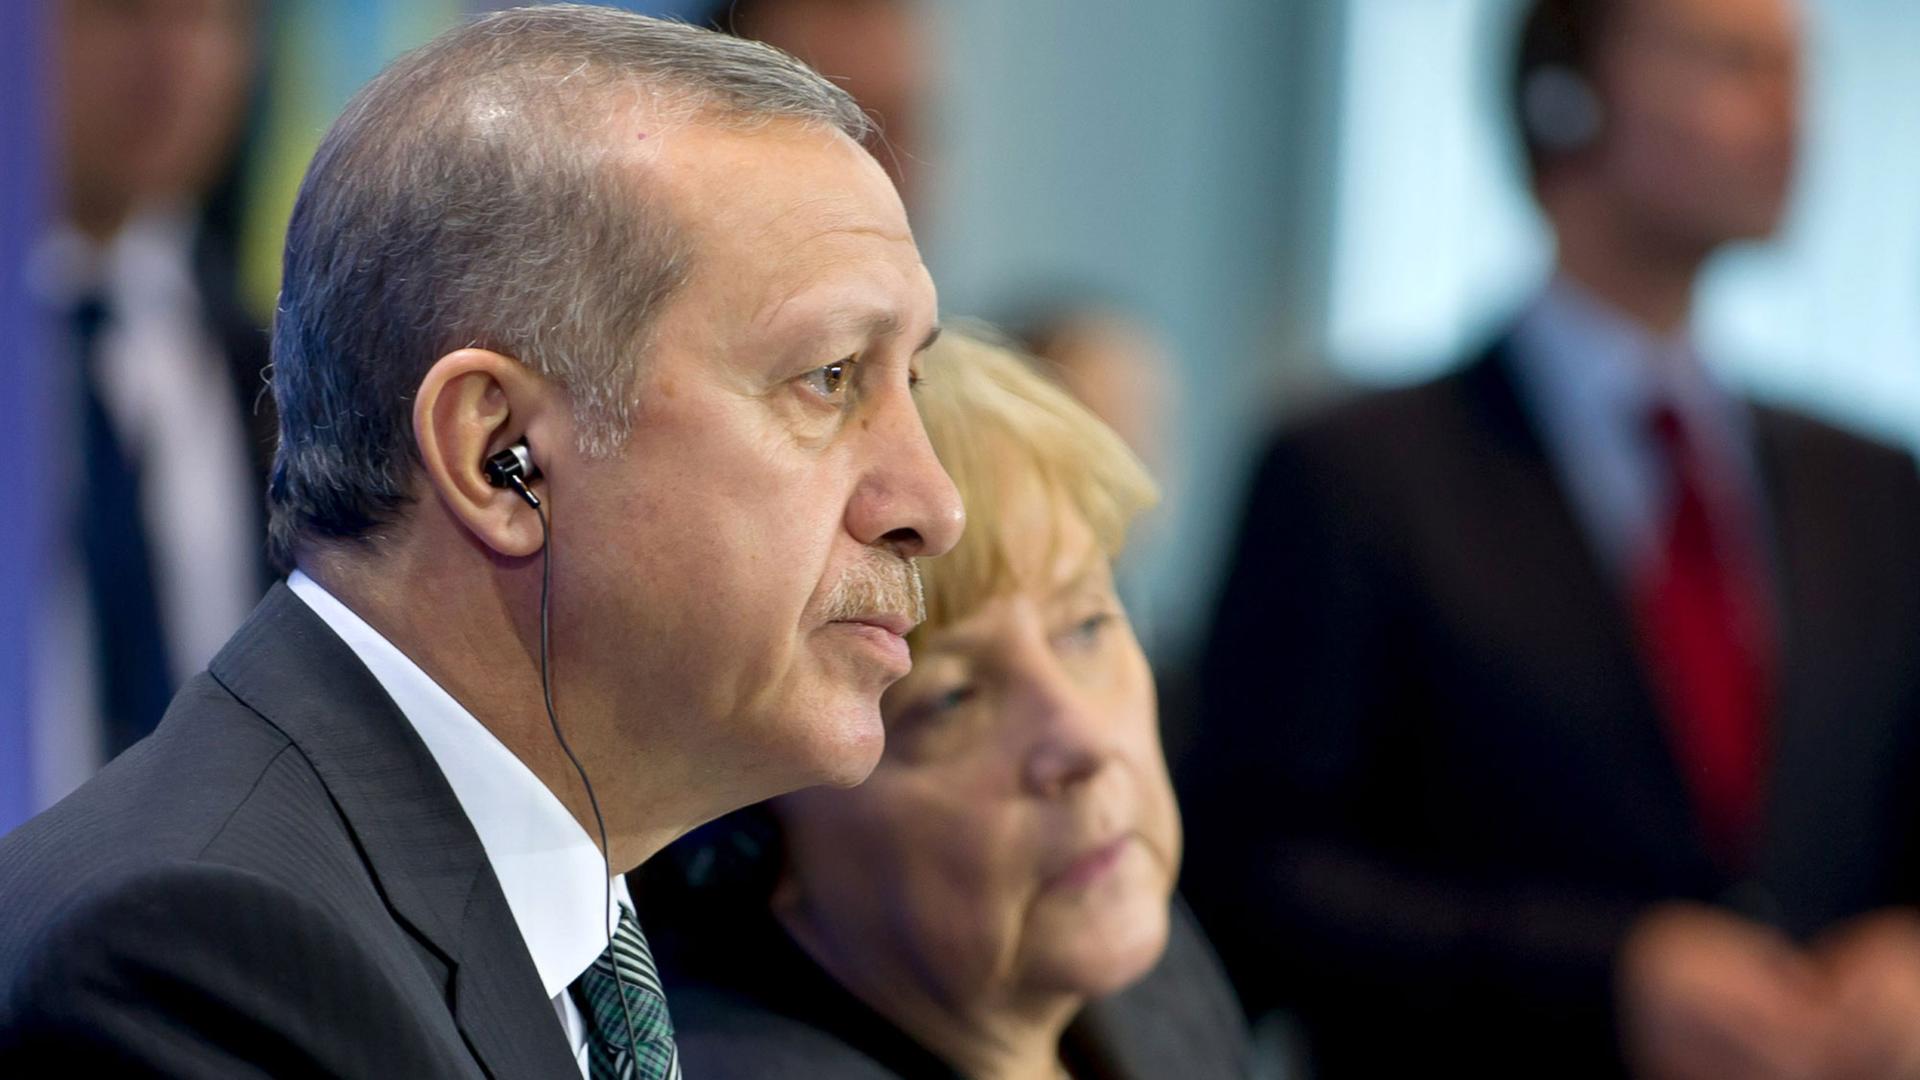 Der türkische Ministerpräsident Recep Tayyip Erdogan und Bundeskanzlerin Angela Merkel bei einer Pressekonferenz in Berlin.